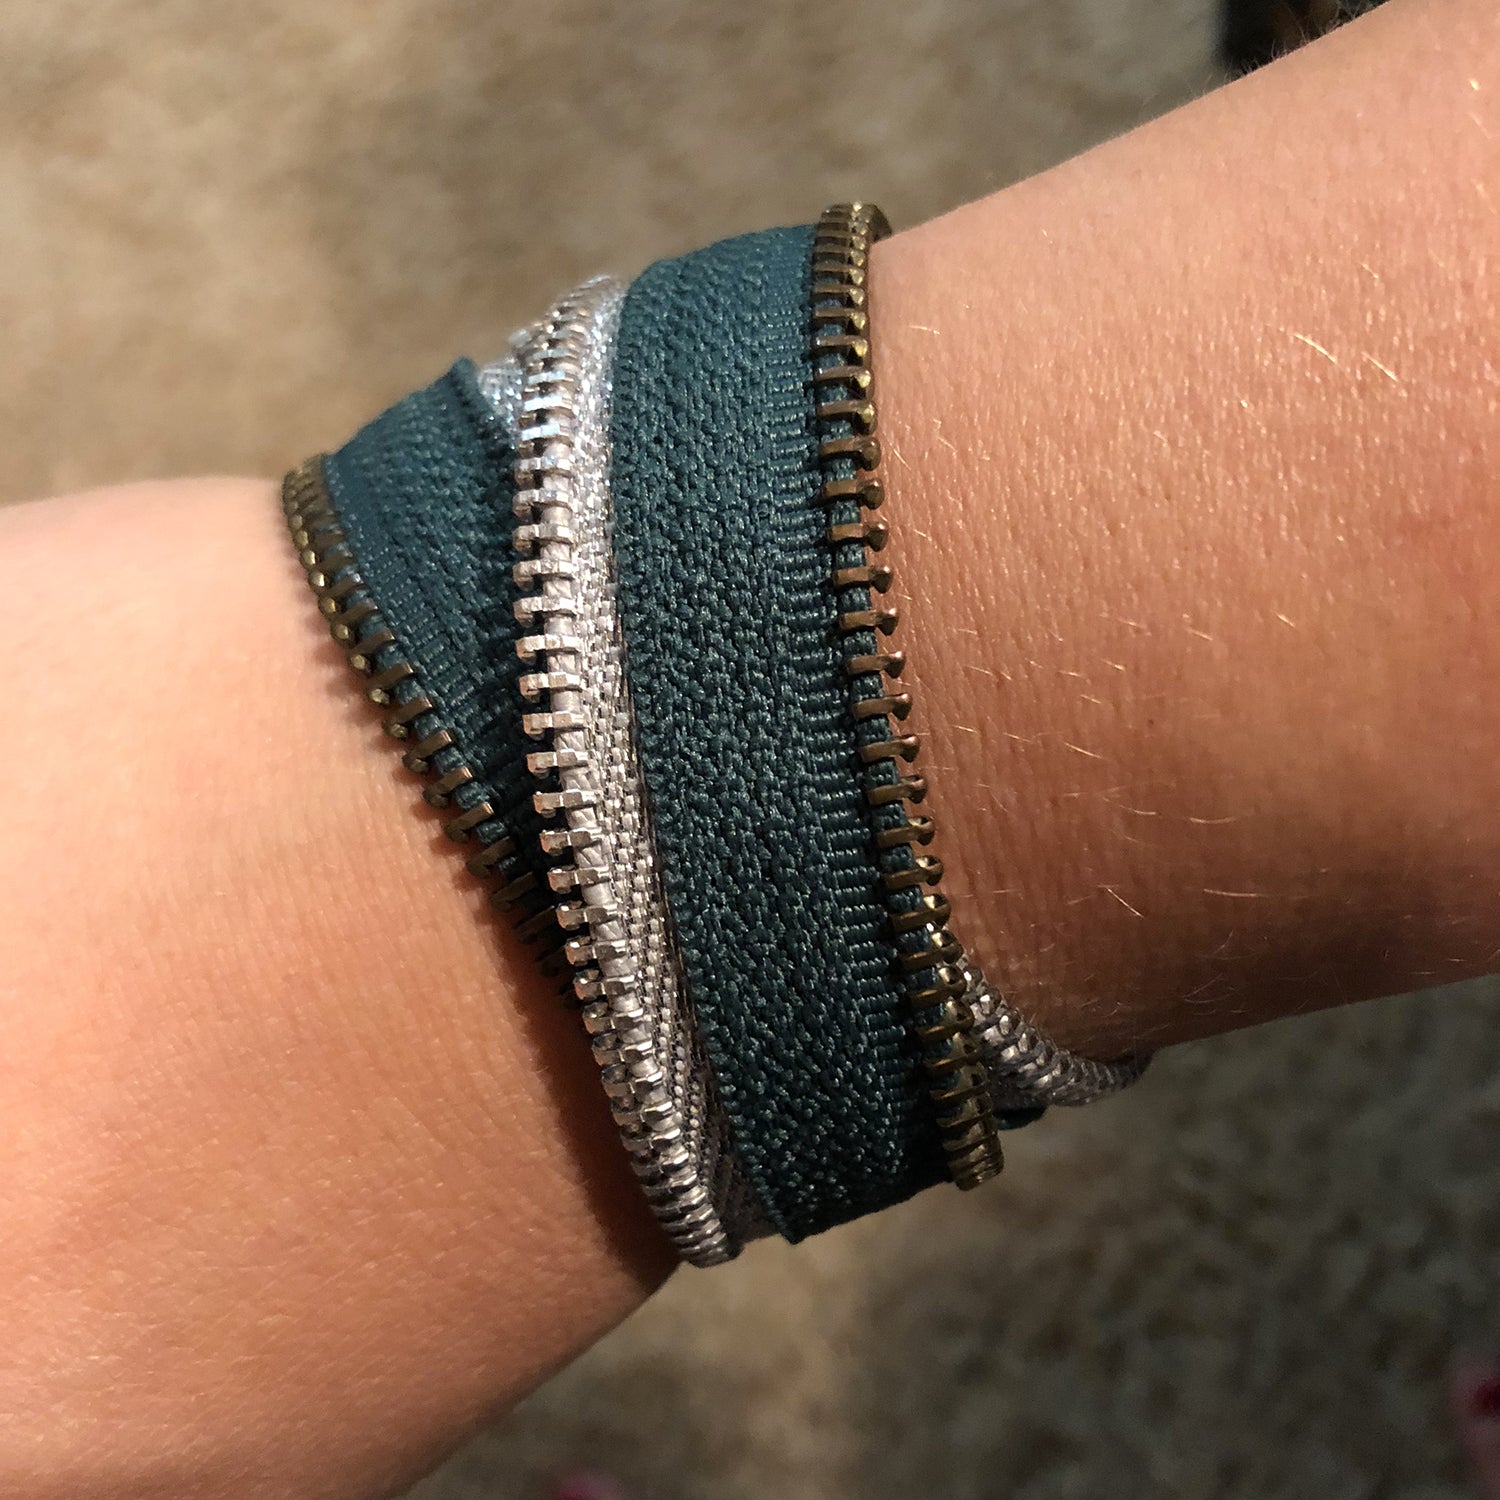 Special Potter Edition: Slytherin Zip Bracelet